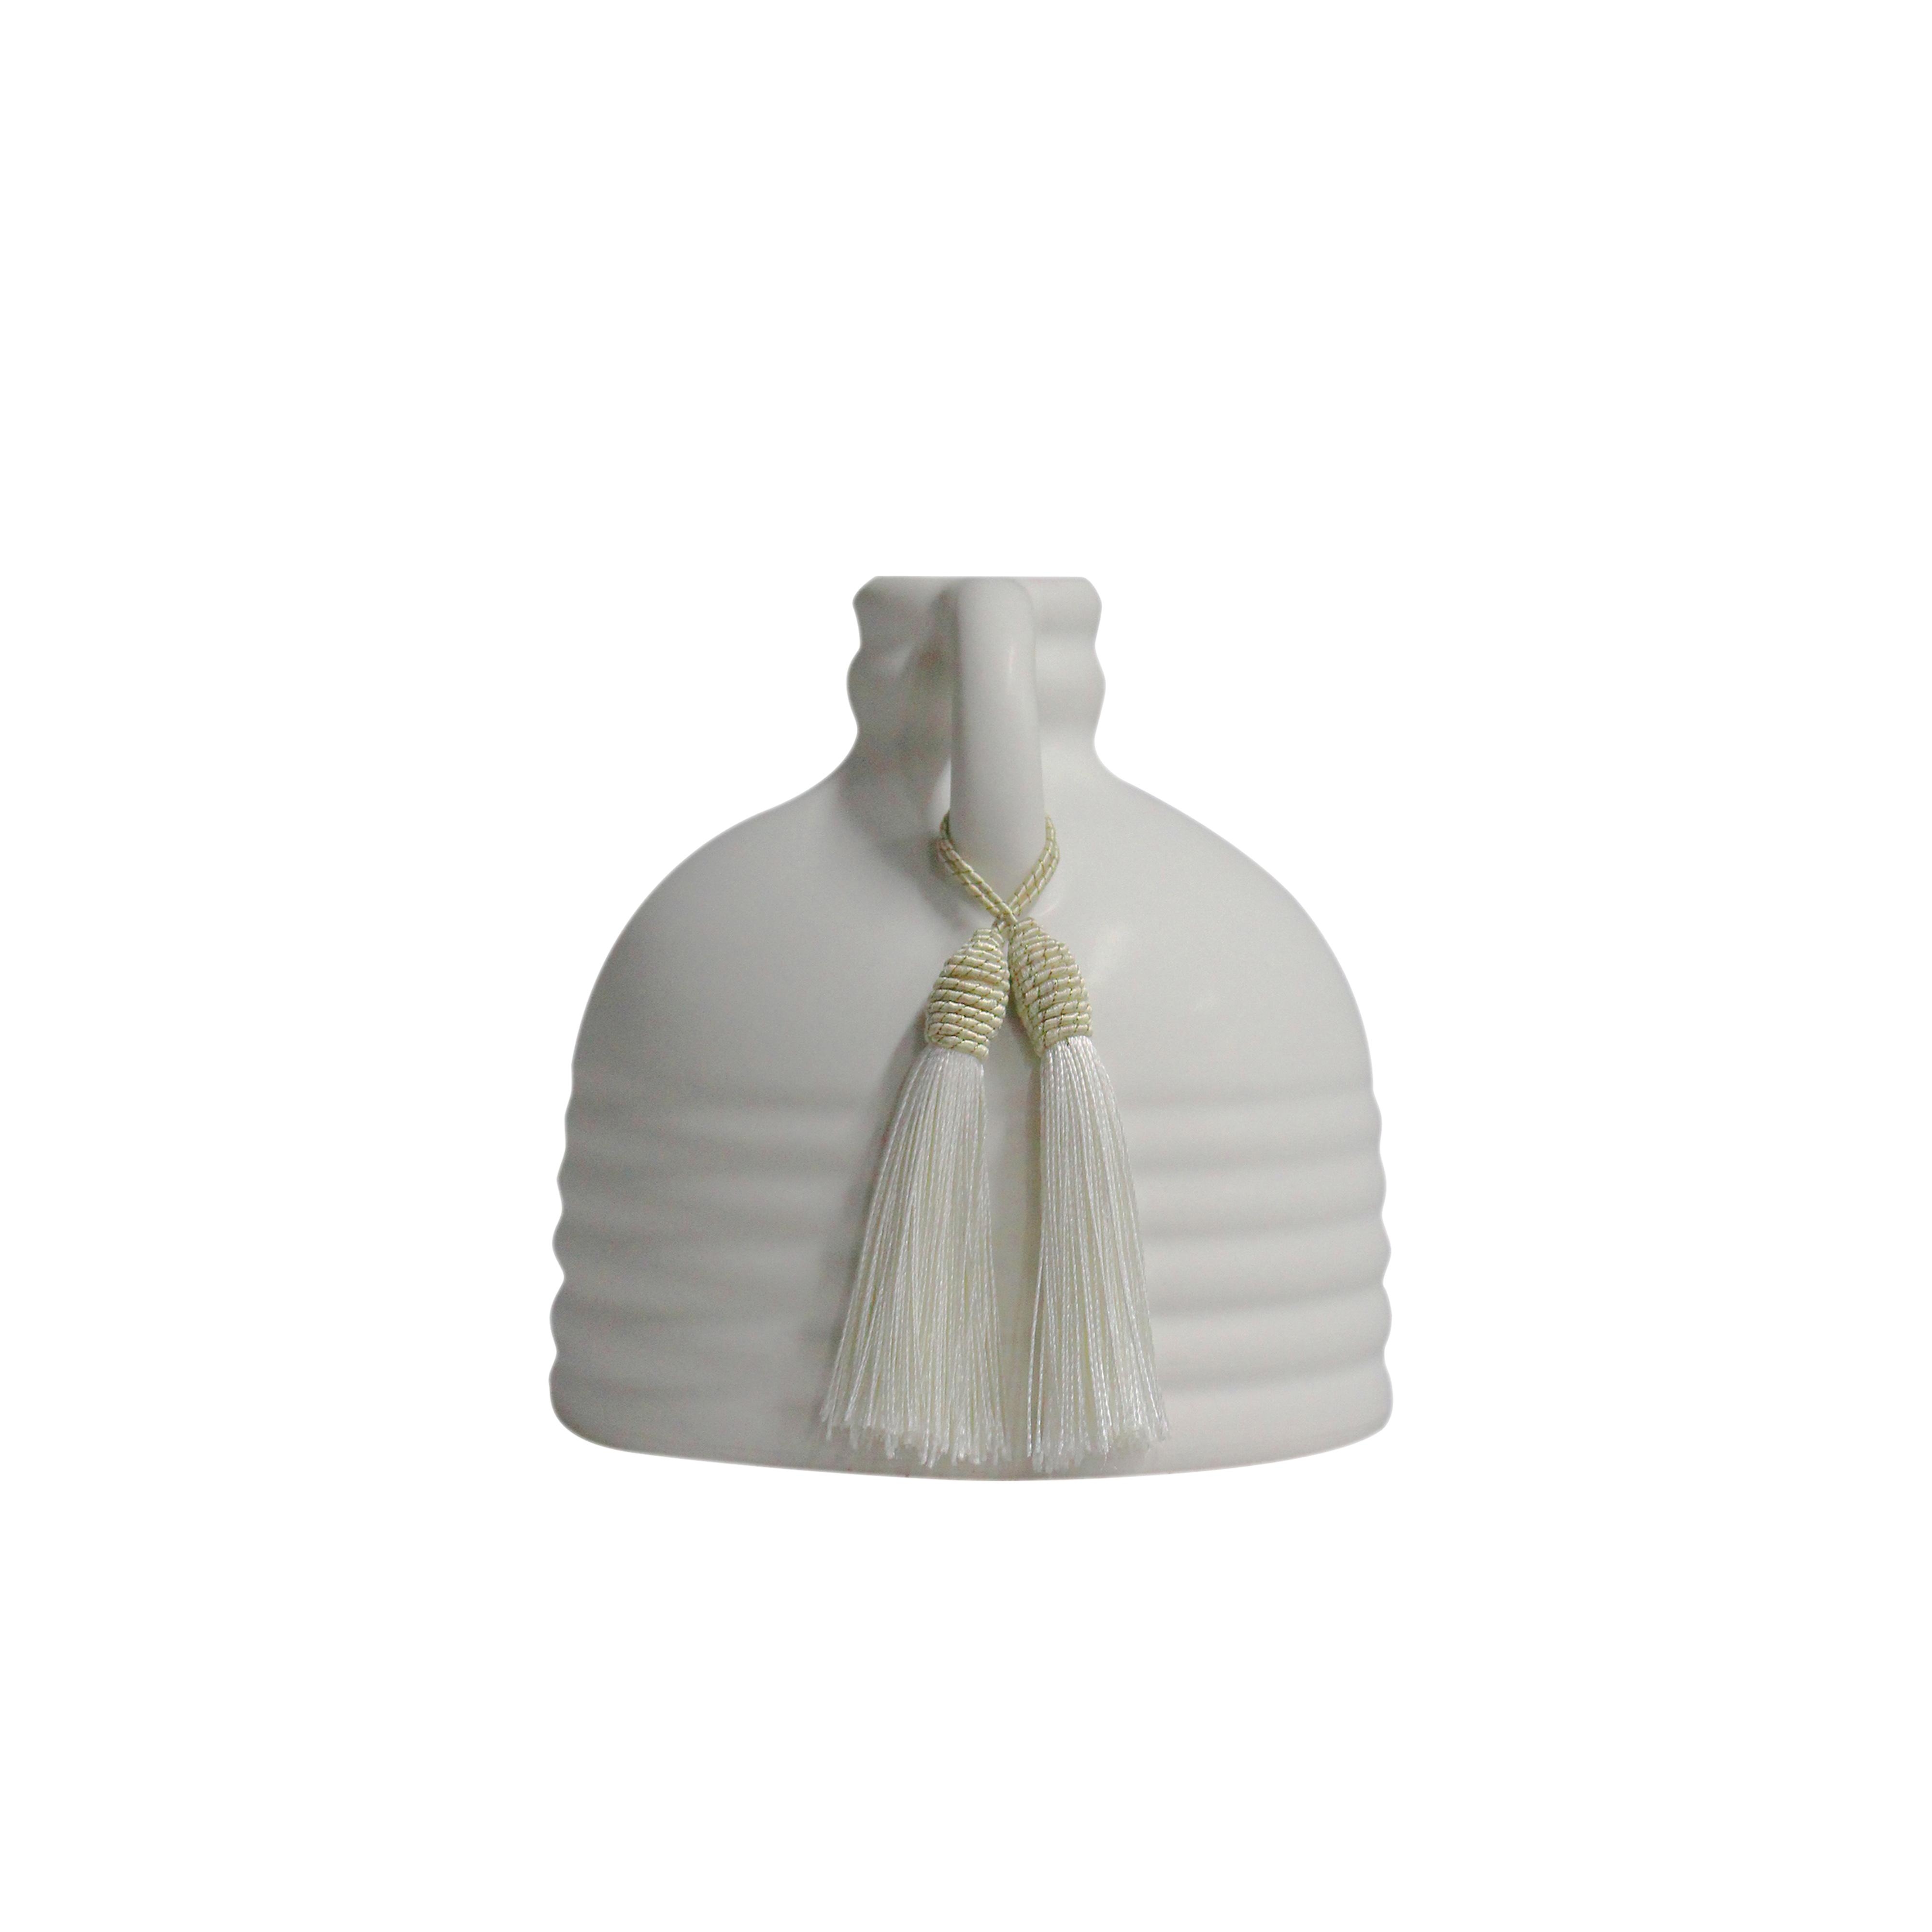 Adonis White Ceramic Vase - Image 1